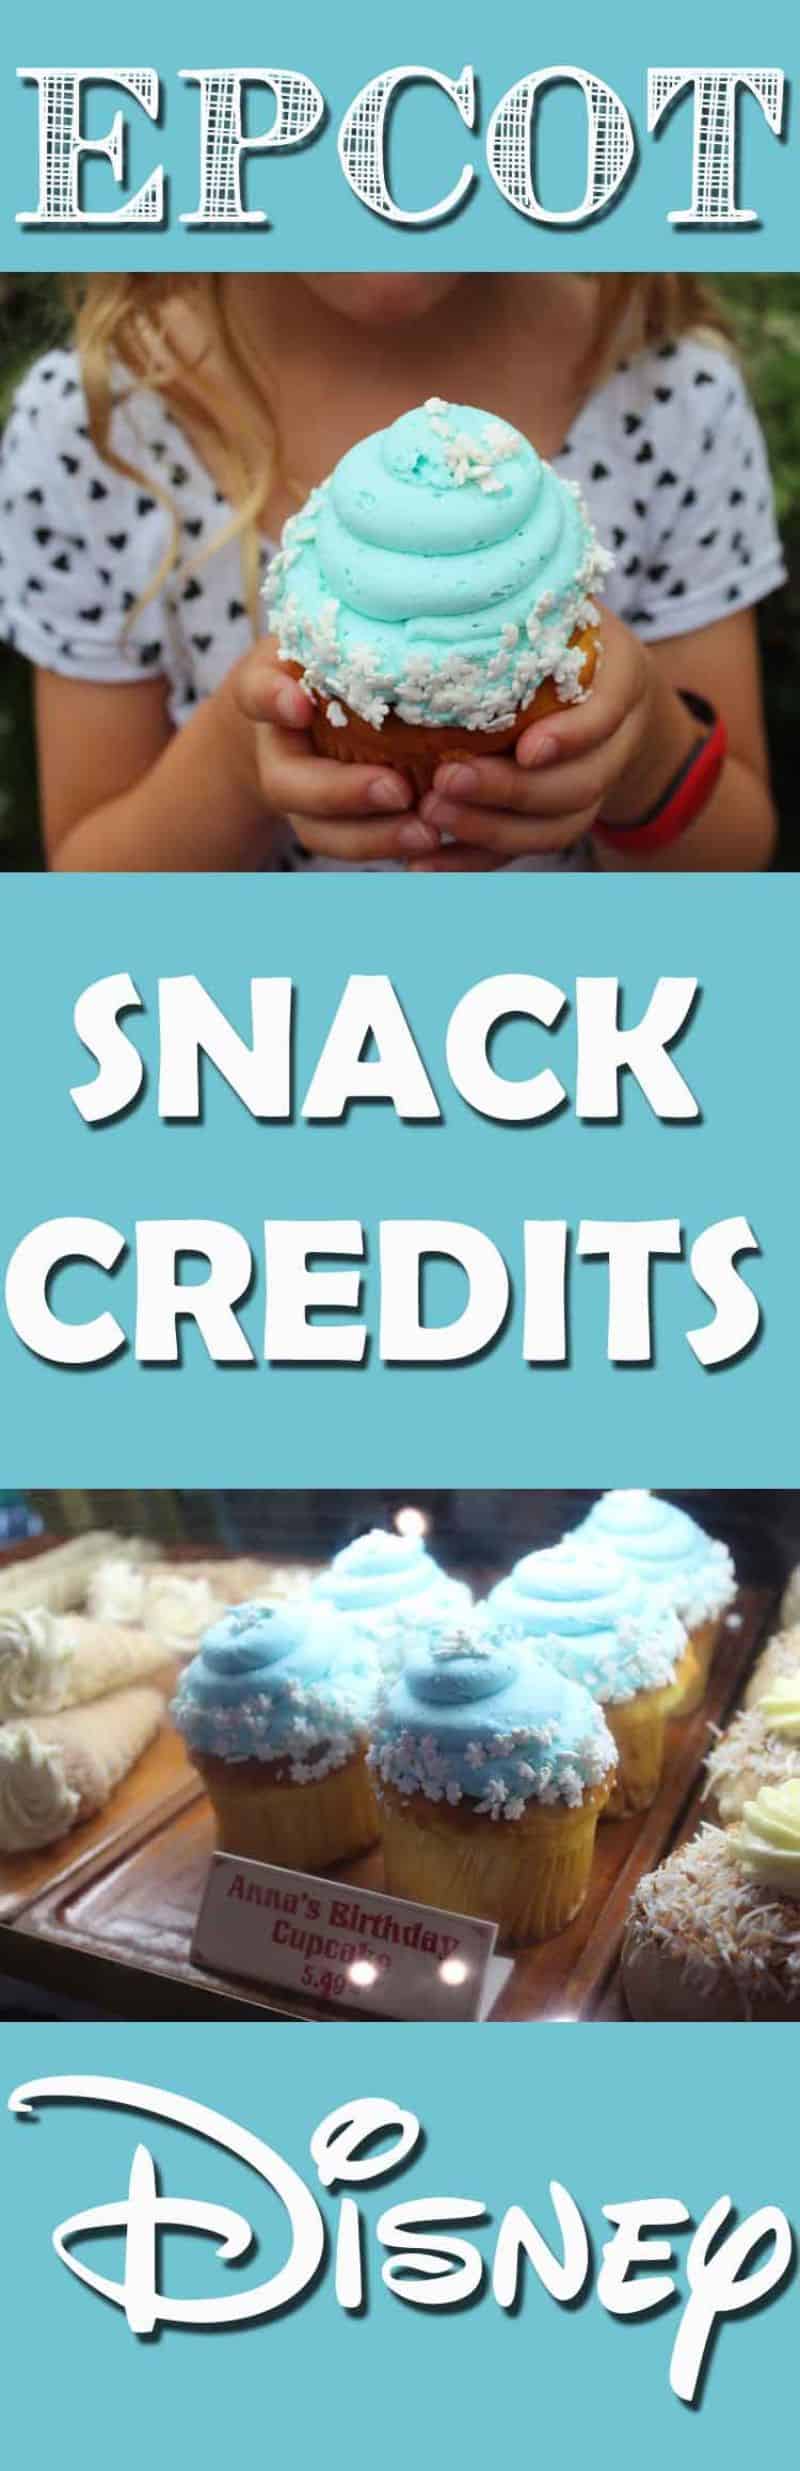 snack credits at epcot